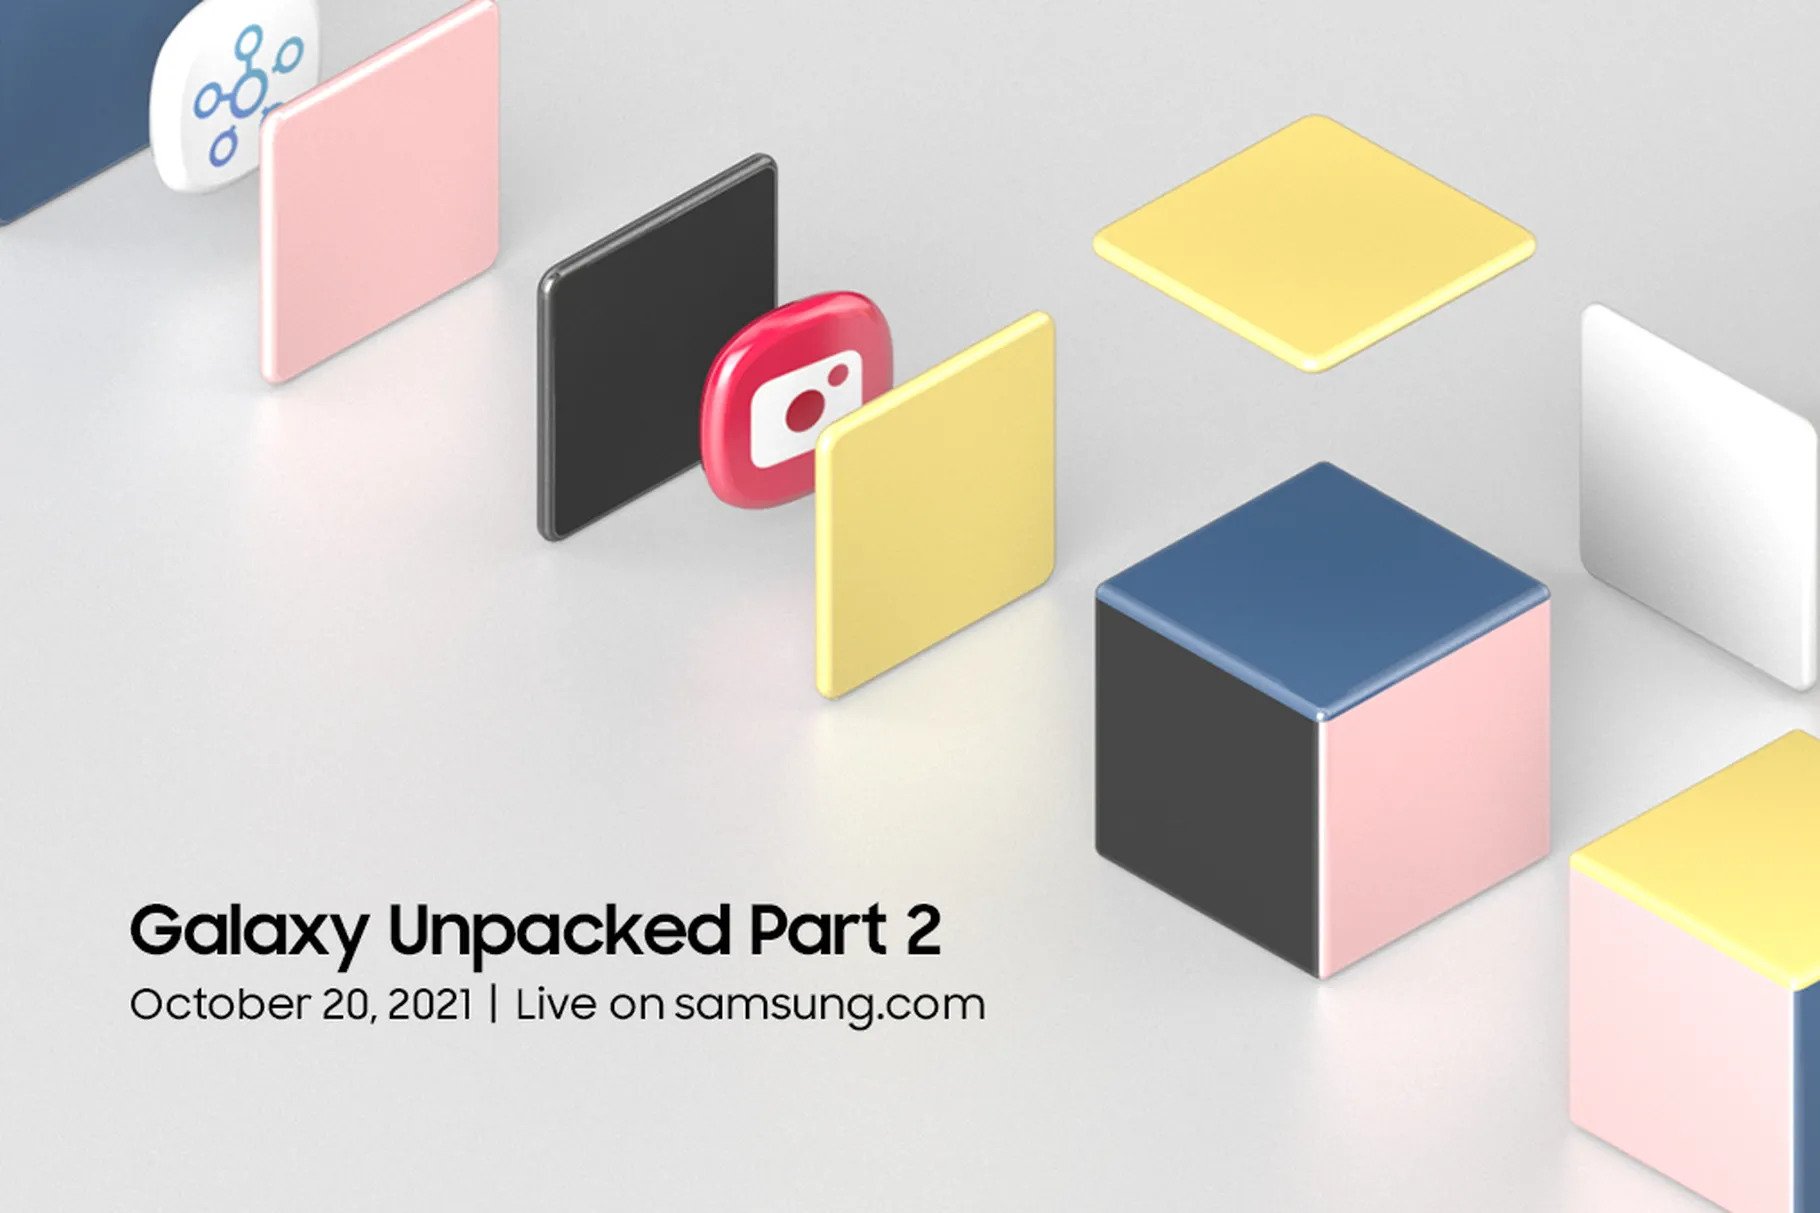 Samsung zapowiada Galaxy Unpacked Part 2, który odbędzie się 20 października